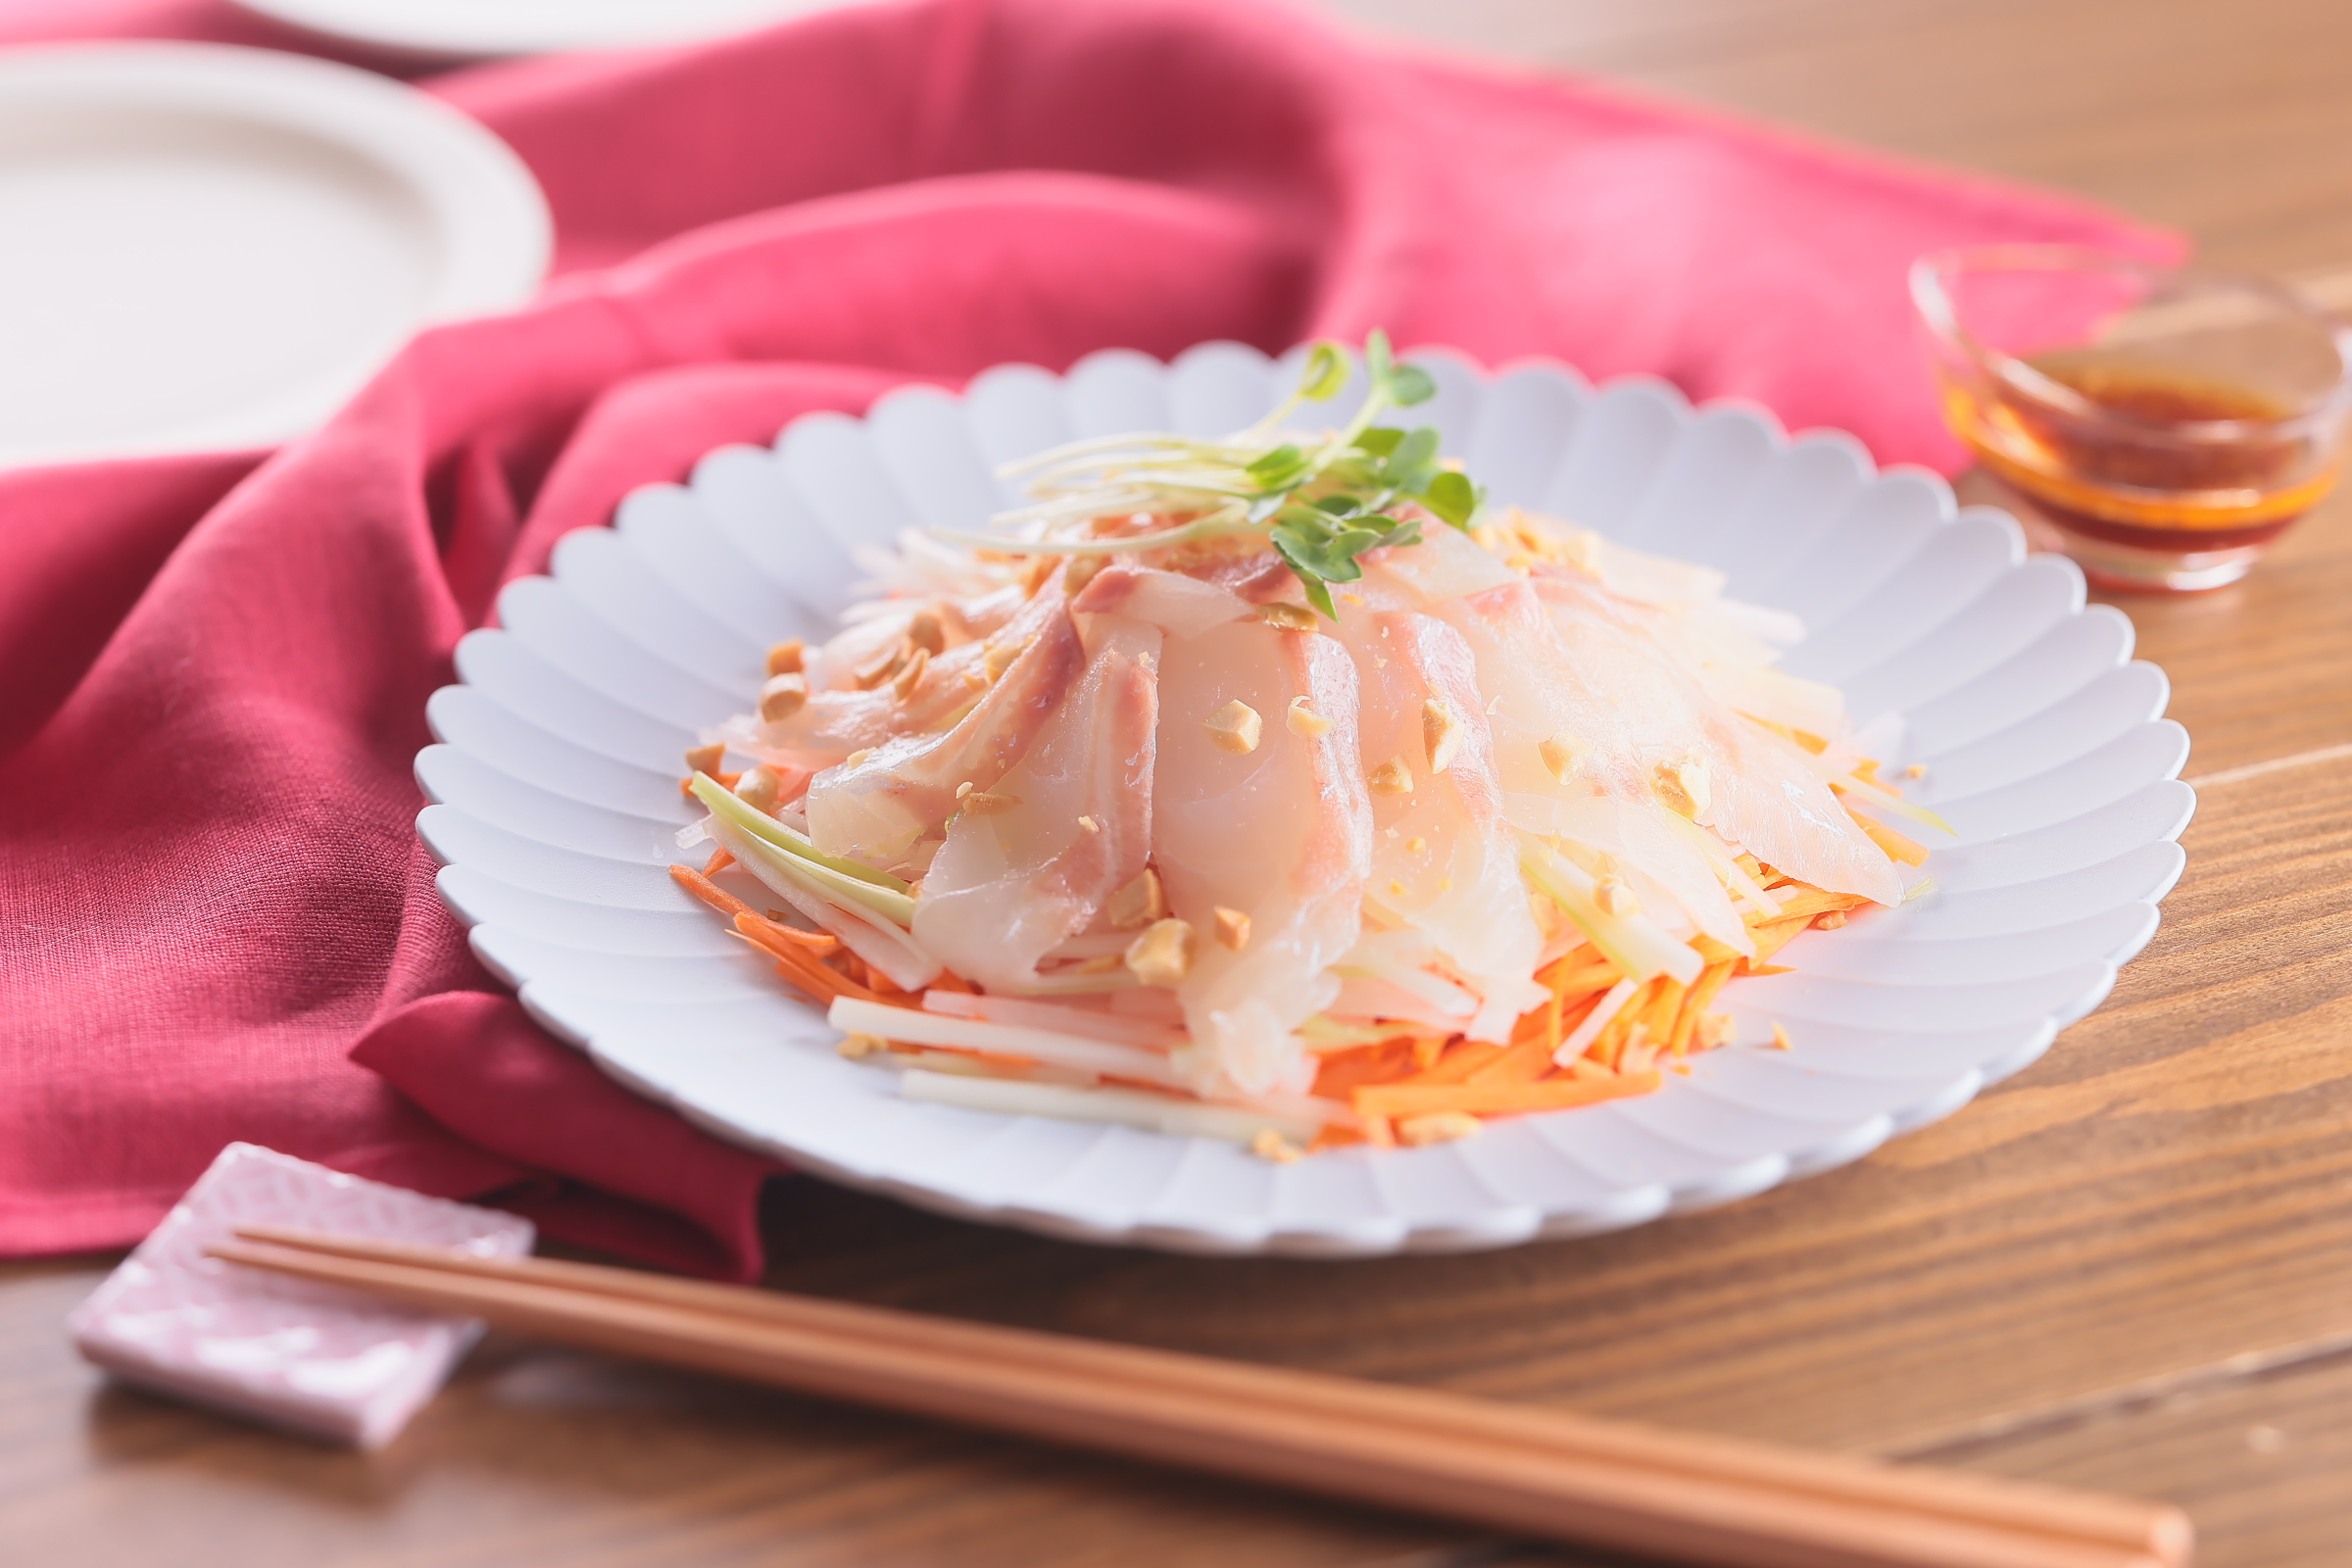 せん切り野菜とピーナッツの食感が楽しい 鯛の中華風サラダ